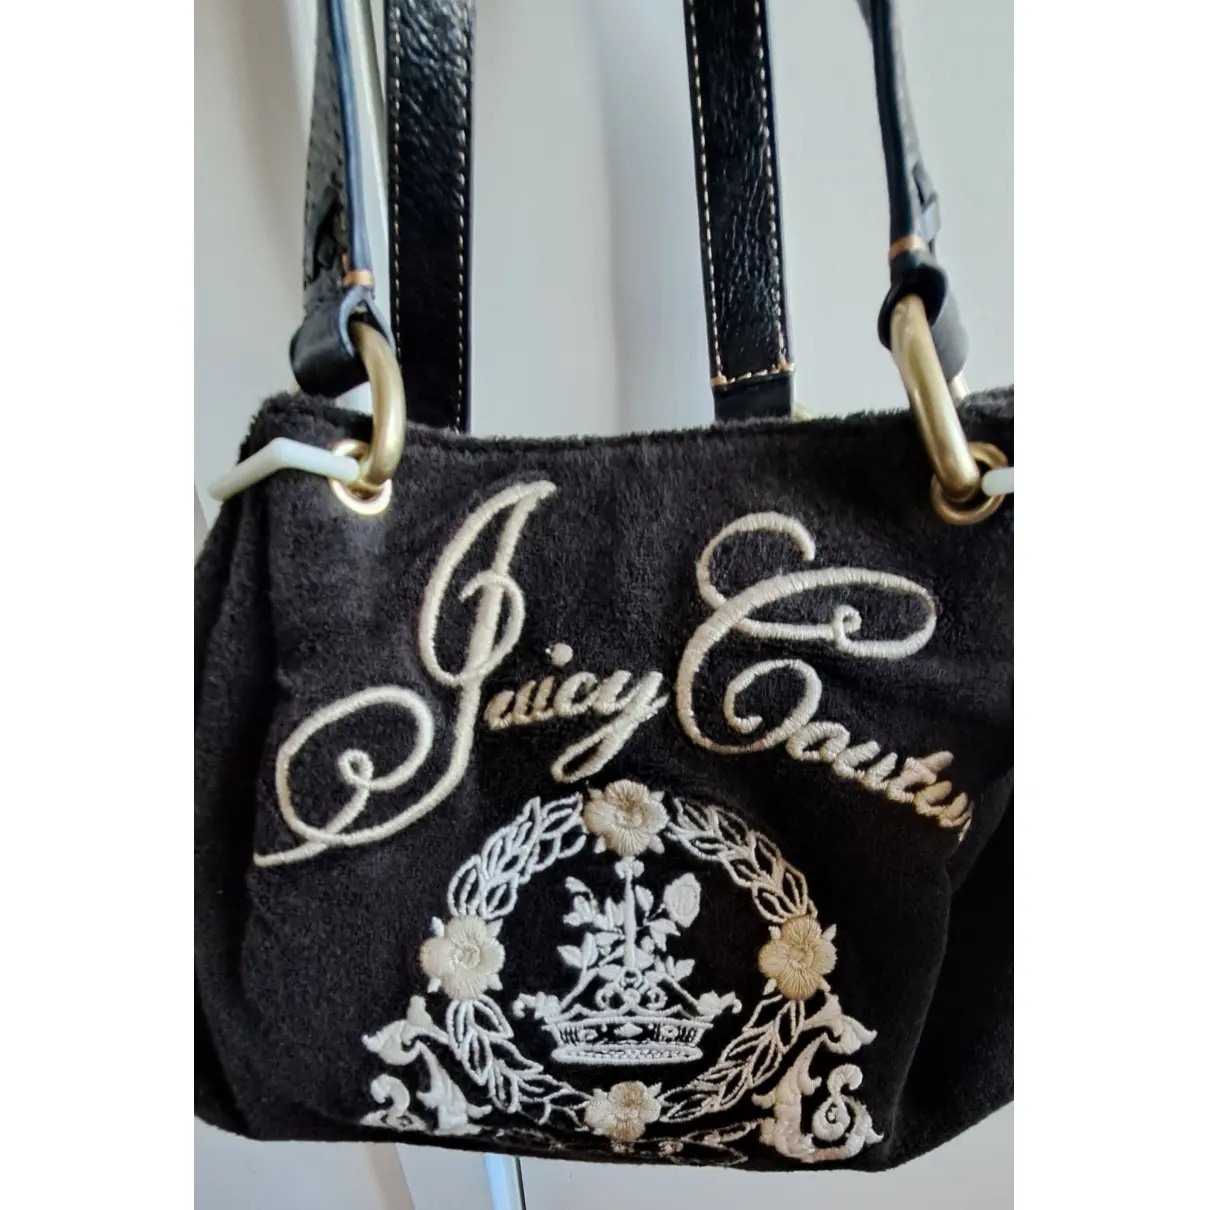 Buy Juicy Couture Cloth handbag online - Vintage